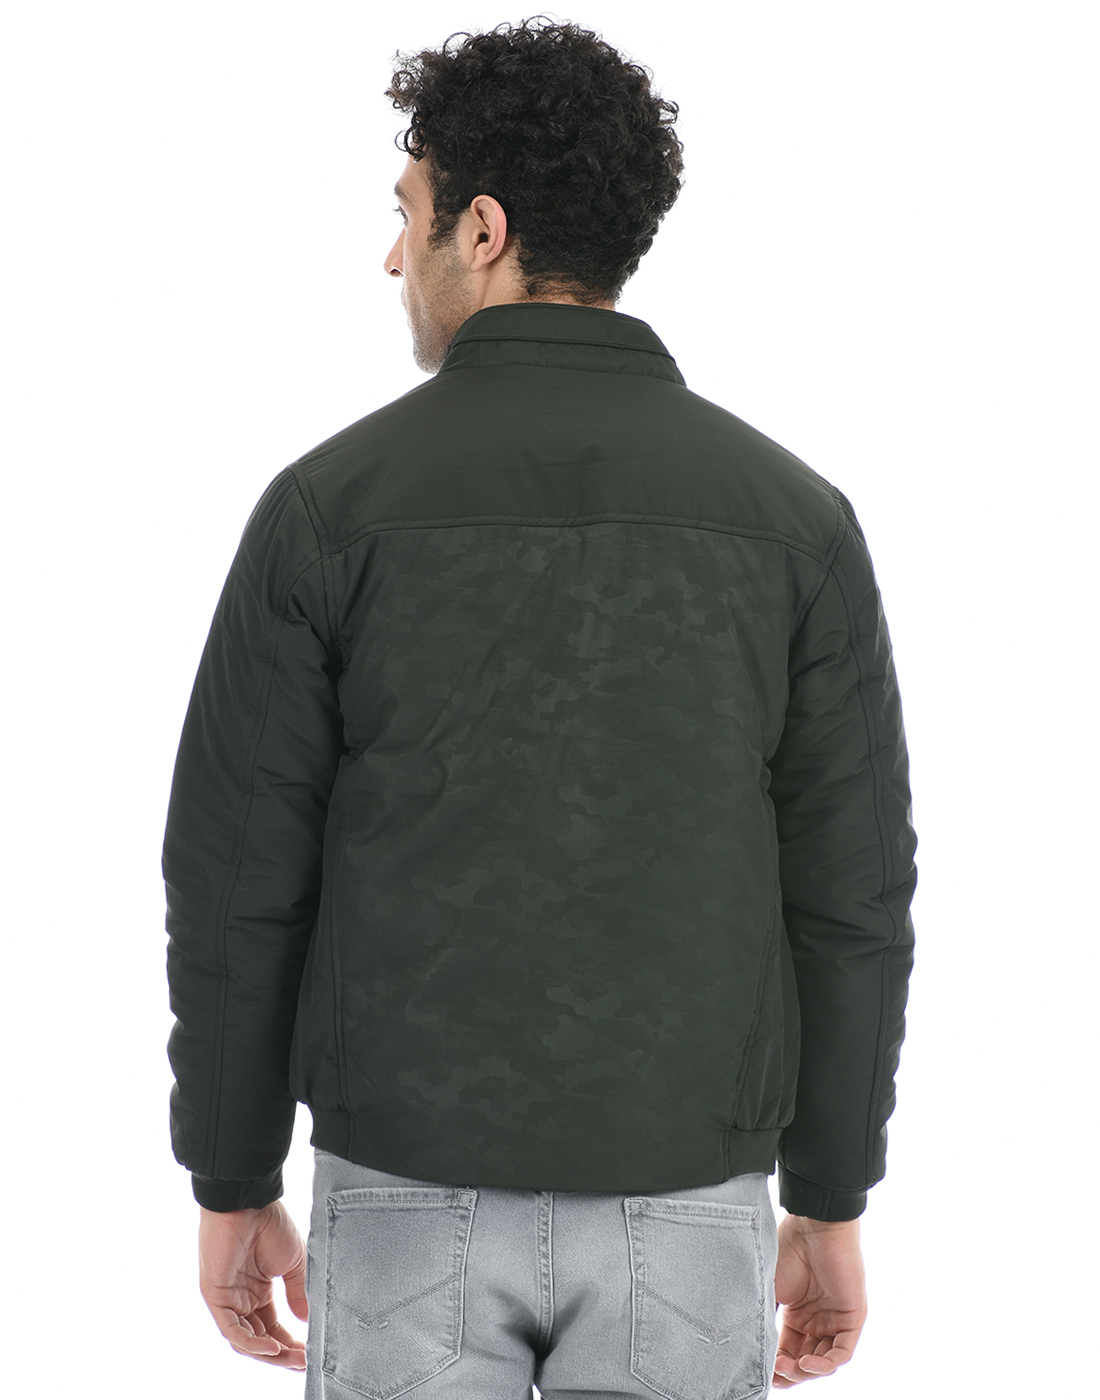 Cloak & Decker by Monte Carlo Men Solid Green Jacket